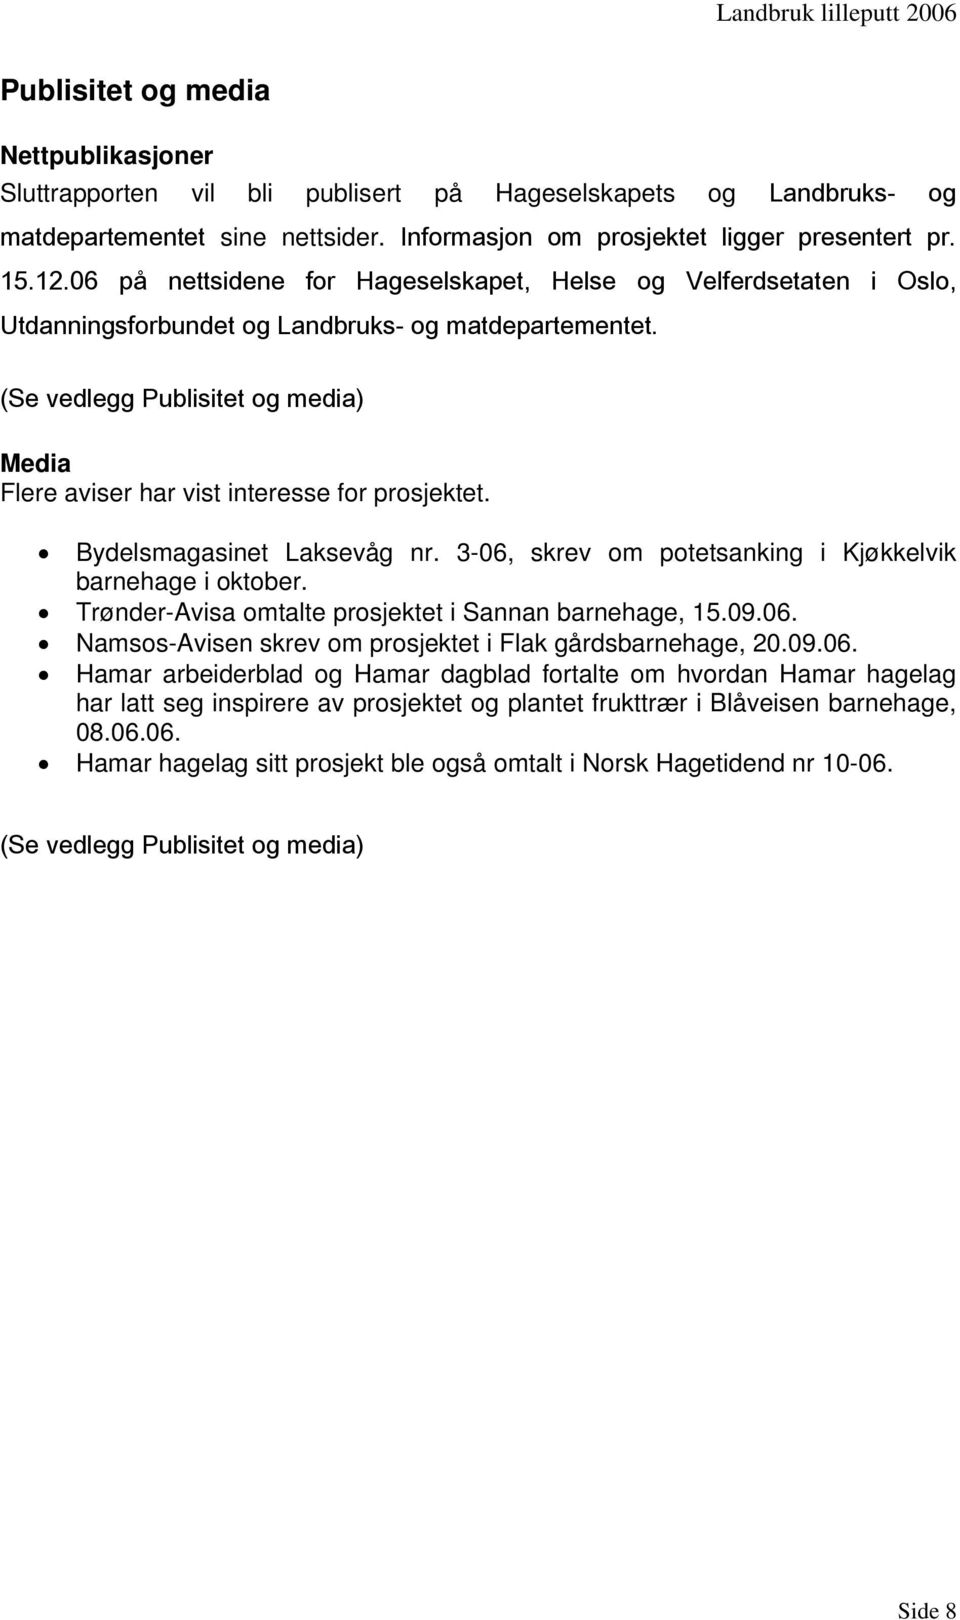 (Se vedlegg Publisitet og media) Media Flere aviser har vist interesse for prosjektet. Bydelsmagasinet Laksevåg nr. 3-06, skrev om potetsanking i Kjøkkelvik barnehage i oktober.